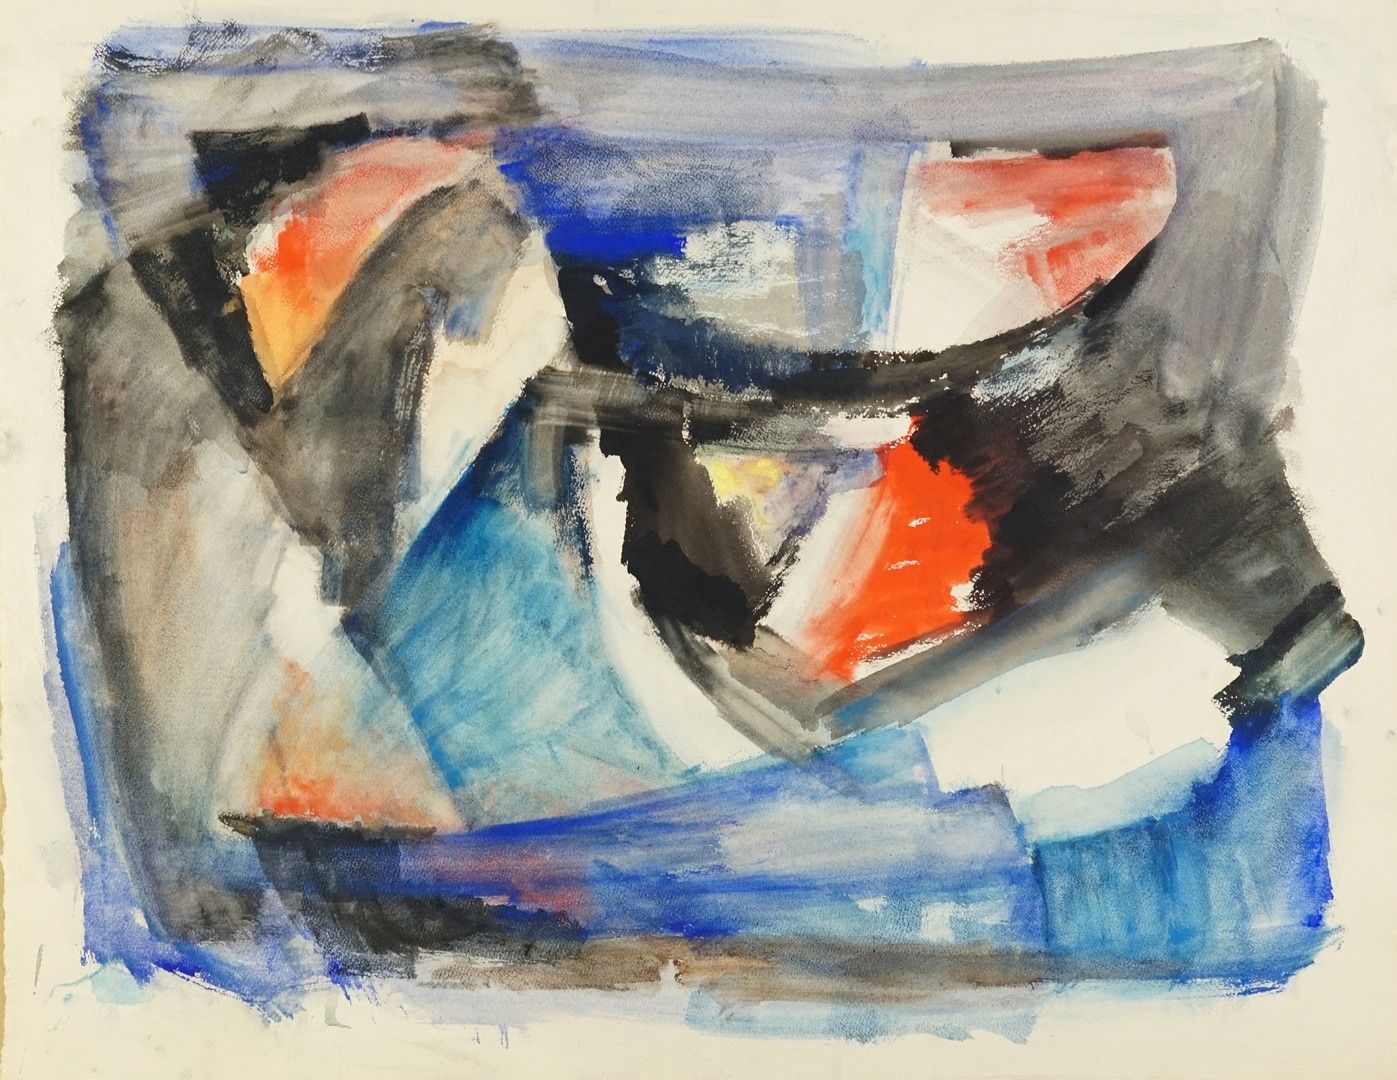 Luigi GUARDIGLI (1926-2008) 创作 1959 - 1960 - 1961 纸上水粉画 49 x 62 cm